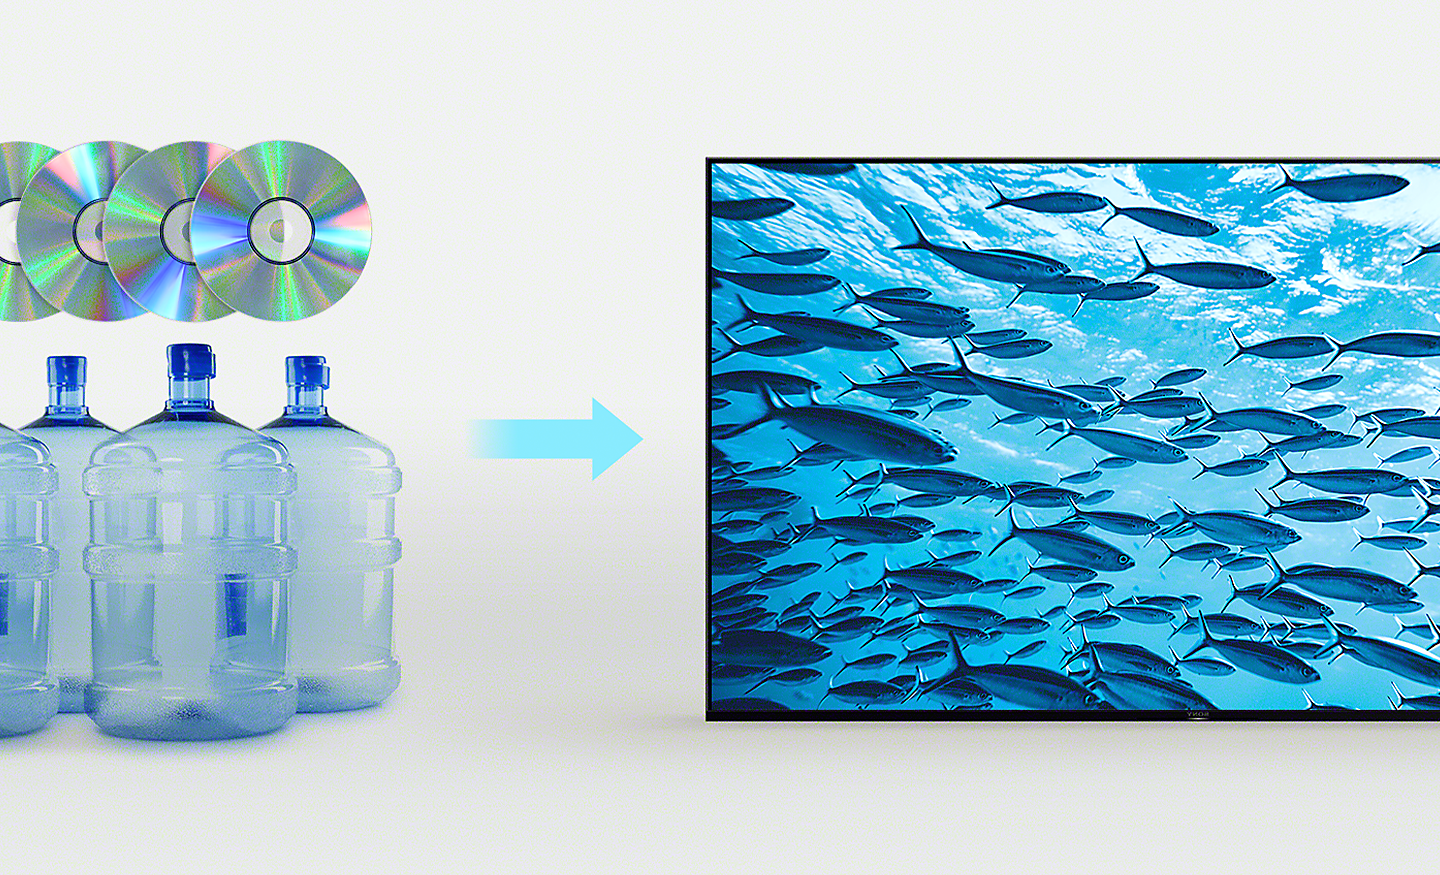 Bilde av fire plastflasker og fire CD-er til venstre og en pil som peker mot en BRAVIA-TV med et skjermbilde av en fisk som svømmer i et hav til høyre